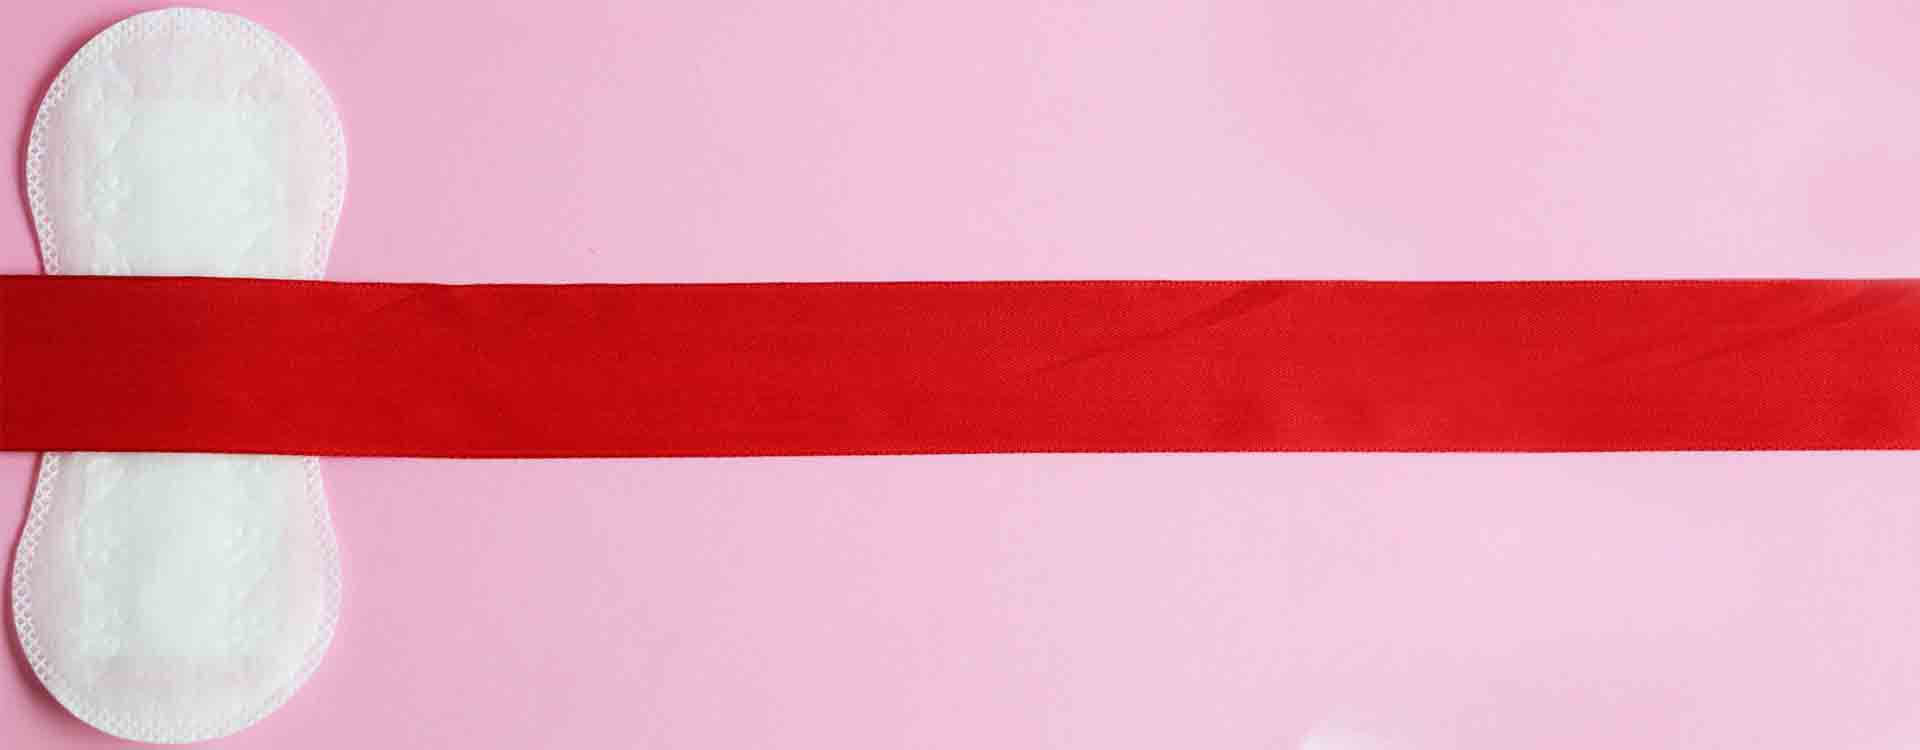 ilustračný obrázok - menštruácia: hygienická vložka prekrytá červenou stuhou